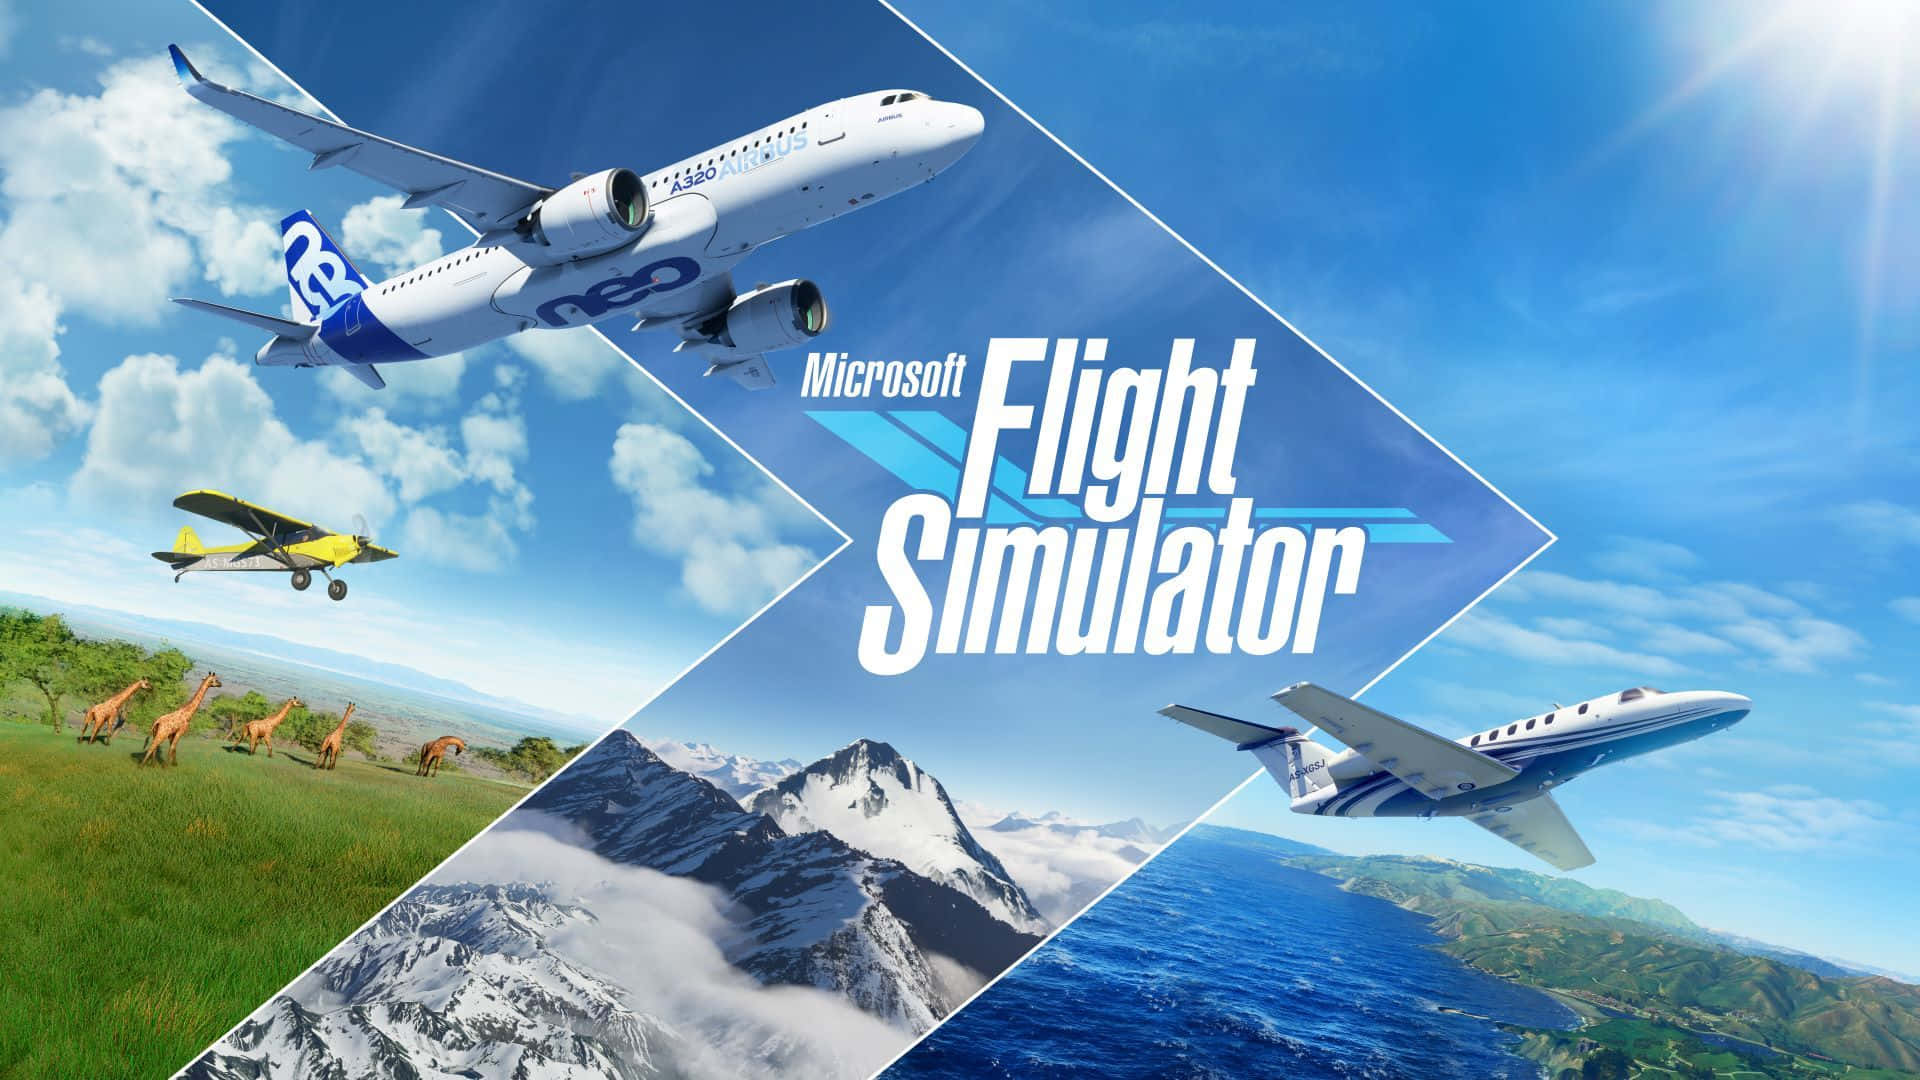 Unavista Del Cielo Da Microsoft Flight Simulator